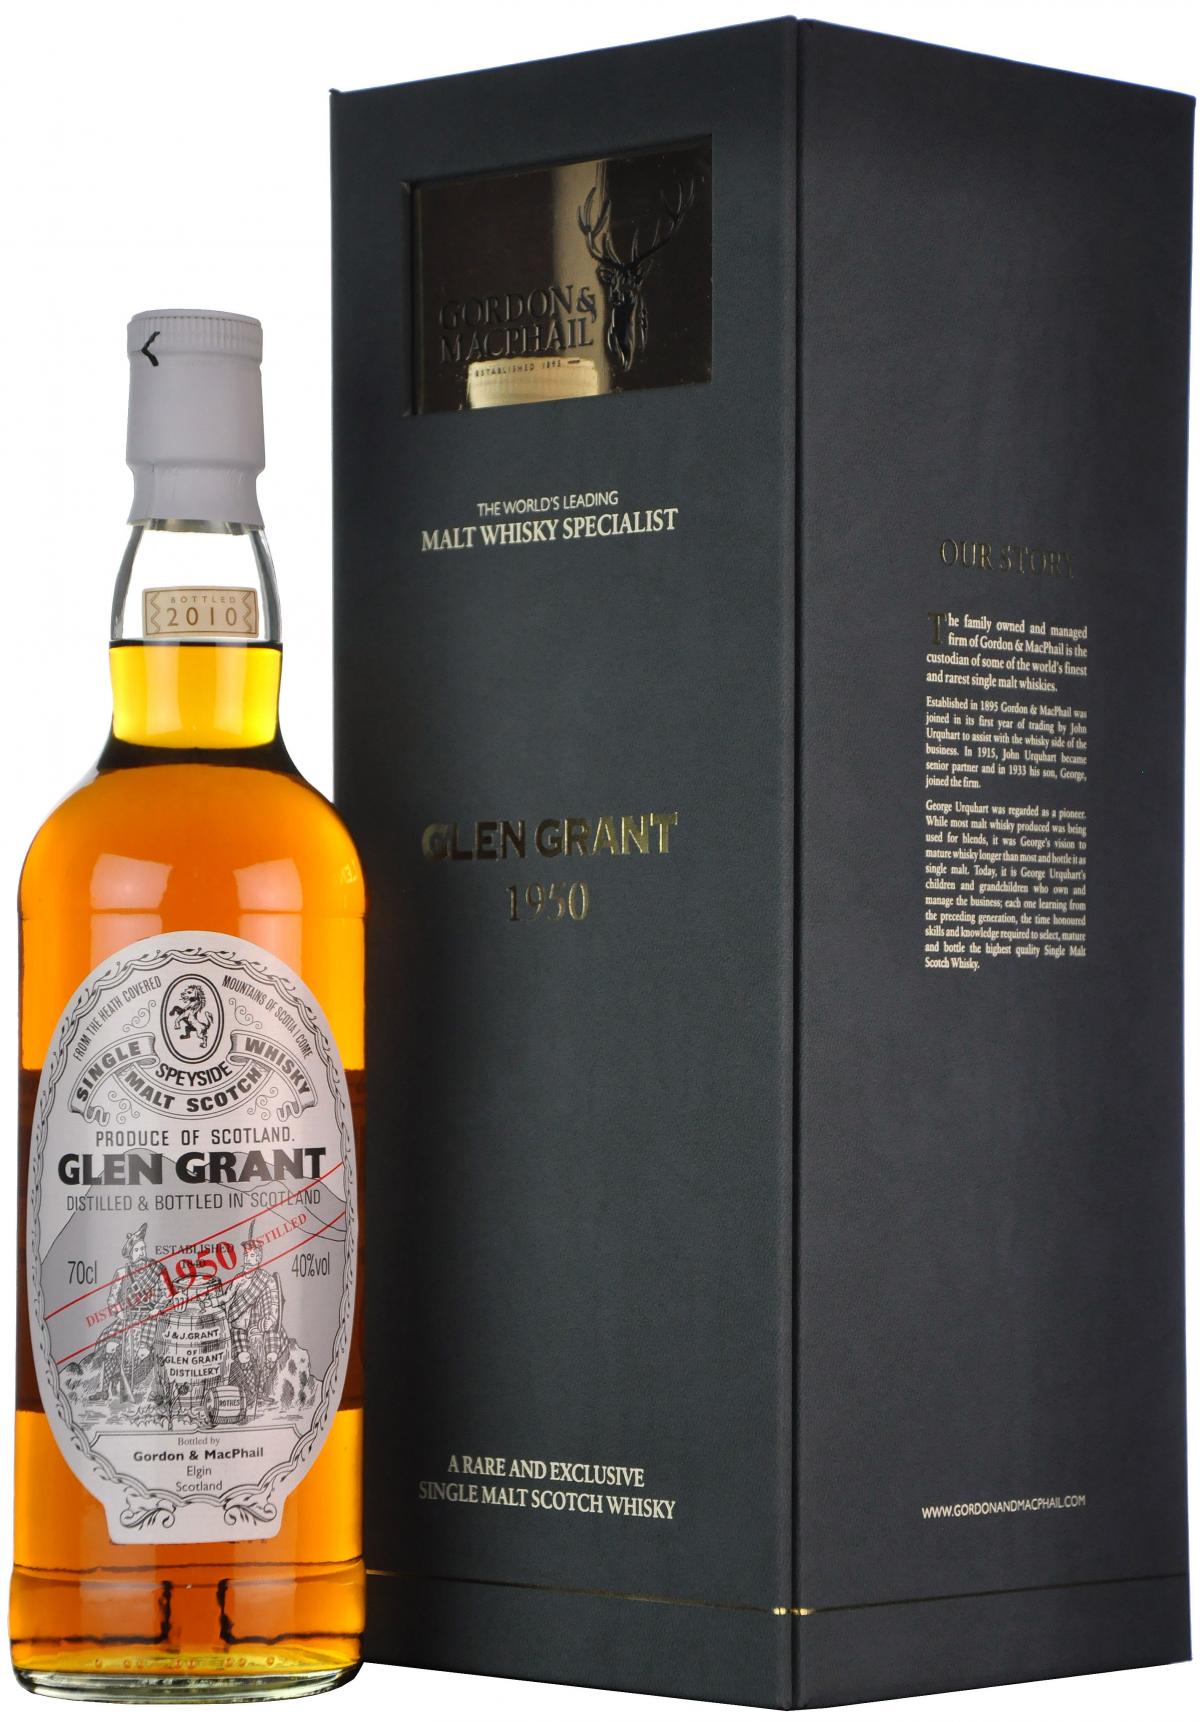 glen grant 1950-2010, gordon & macphail, speyside single malt scotch whisky